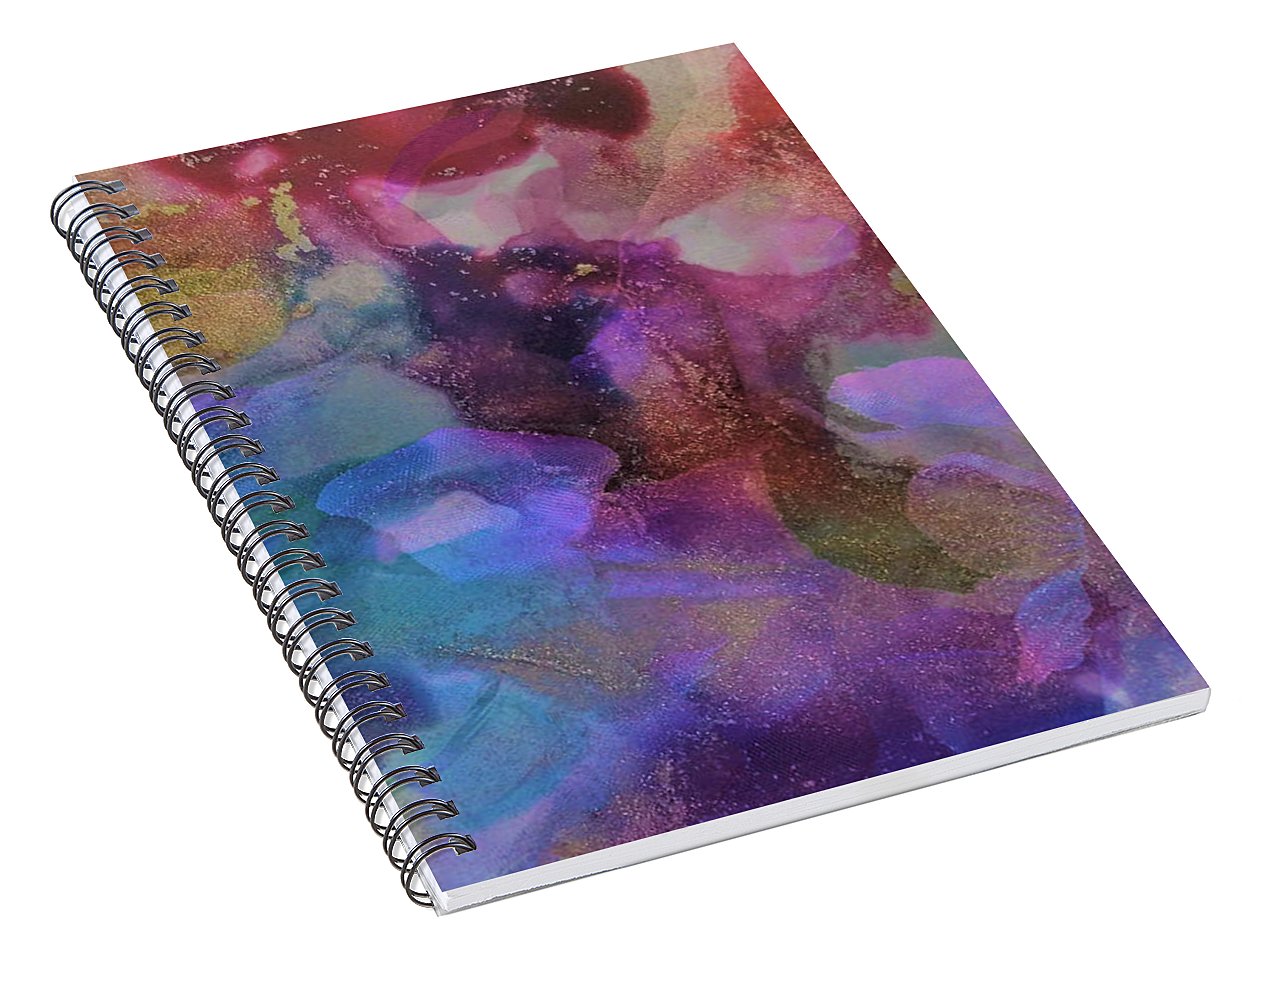 Petals - Spiral Notebook